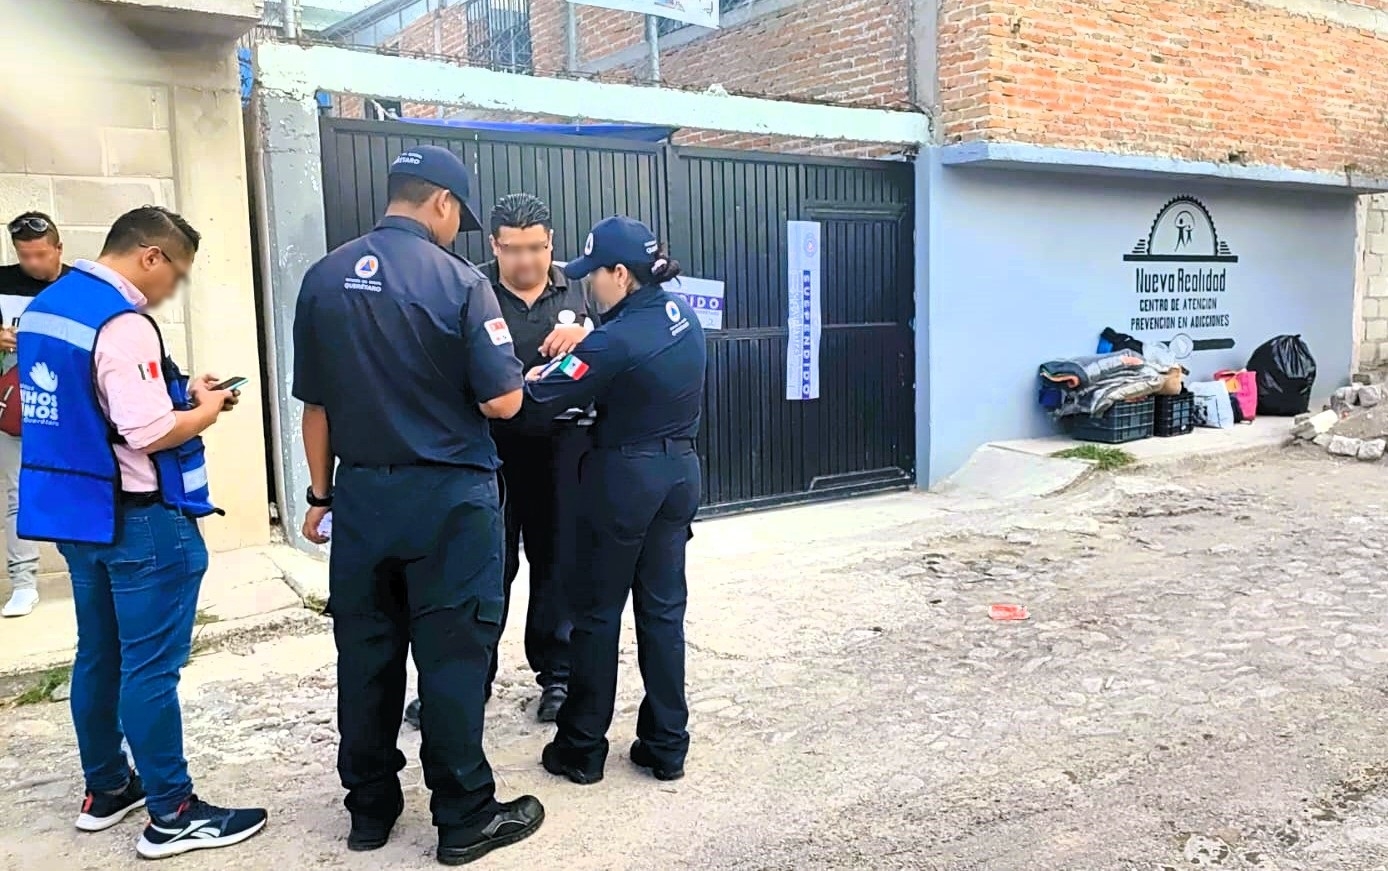 Muere una persona en Centro de rehabilitación en Querétaro; Autoridades clausuran el lugar